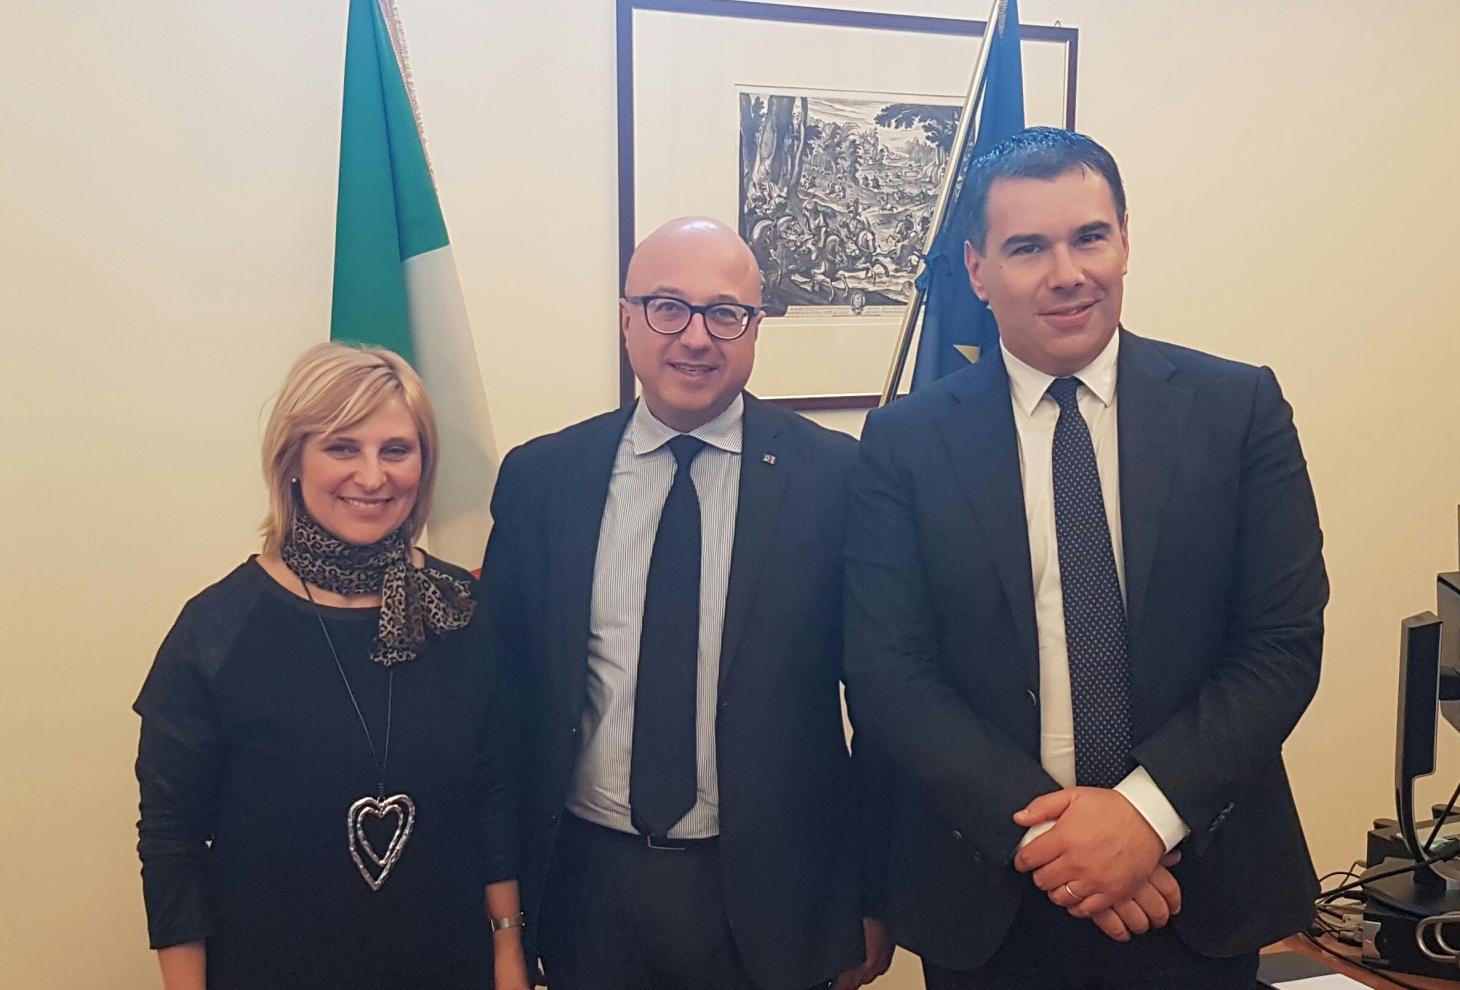 Incontro con il sottosegretario ai Beni culturali e al Turismo Antimo Cesaro, l'assessore Gerosolimo e il sindaco di Sulmona Annamaria Casini